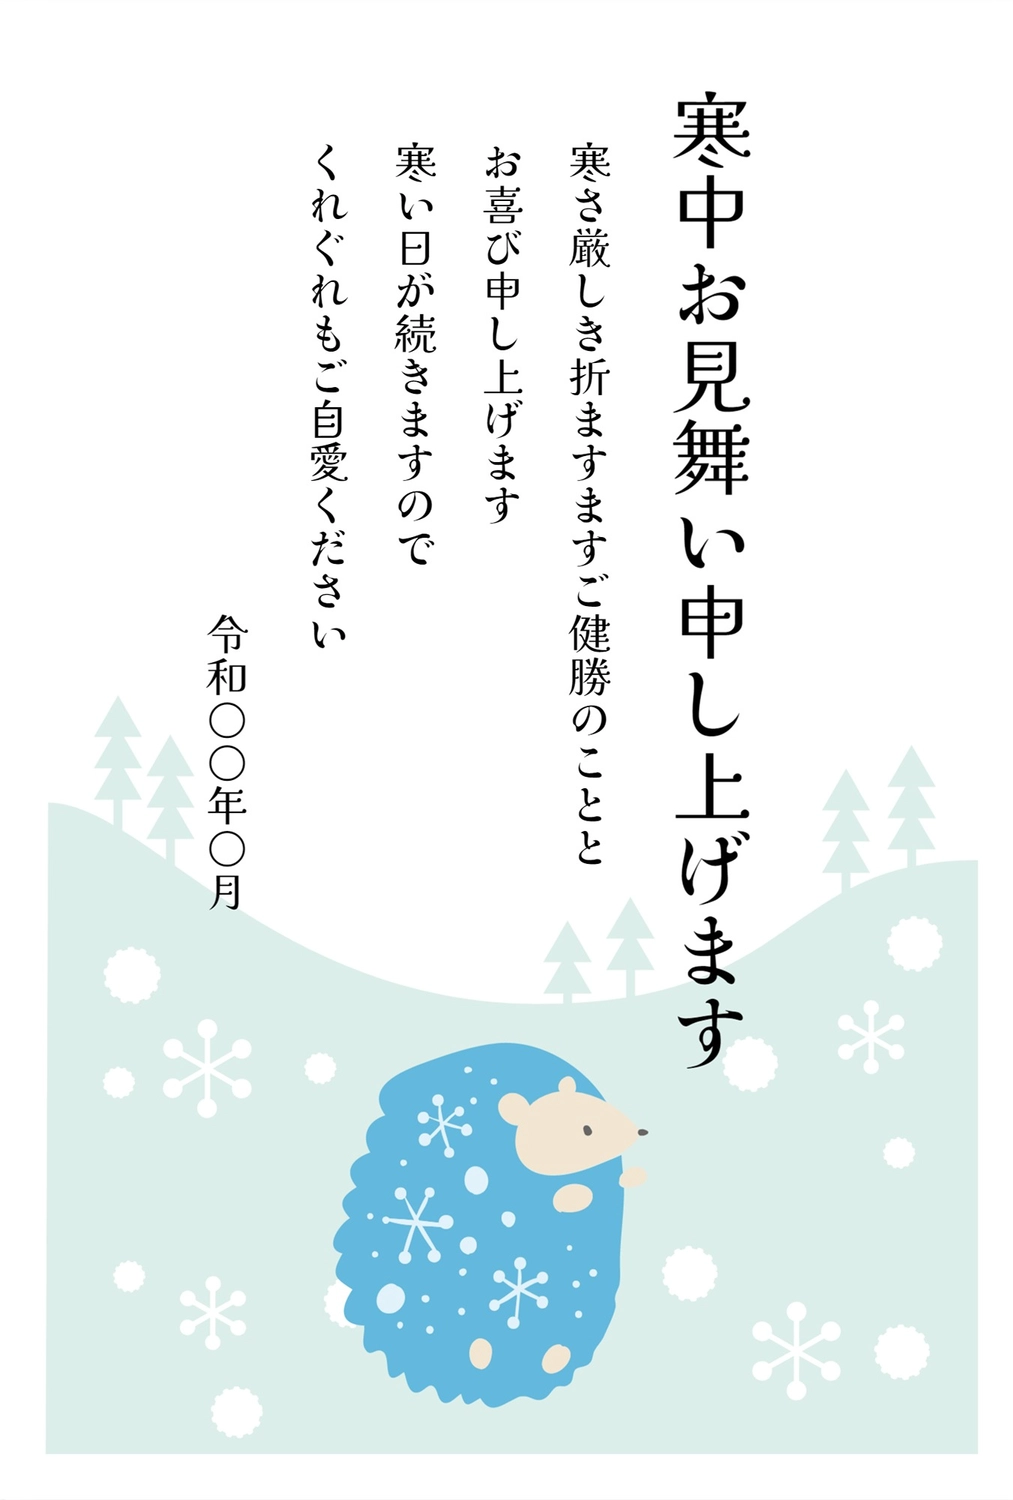 寒中見舞い　横向きハリネズミ, January, February, greeting card, Mid-winter Greeting template